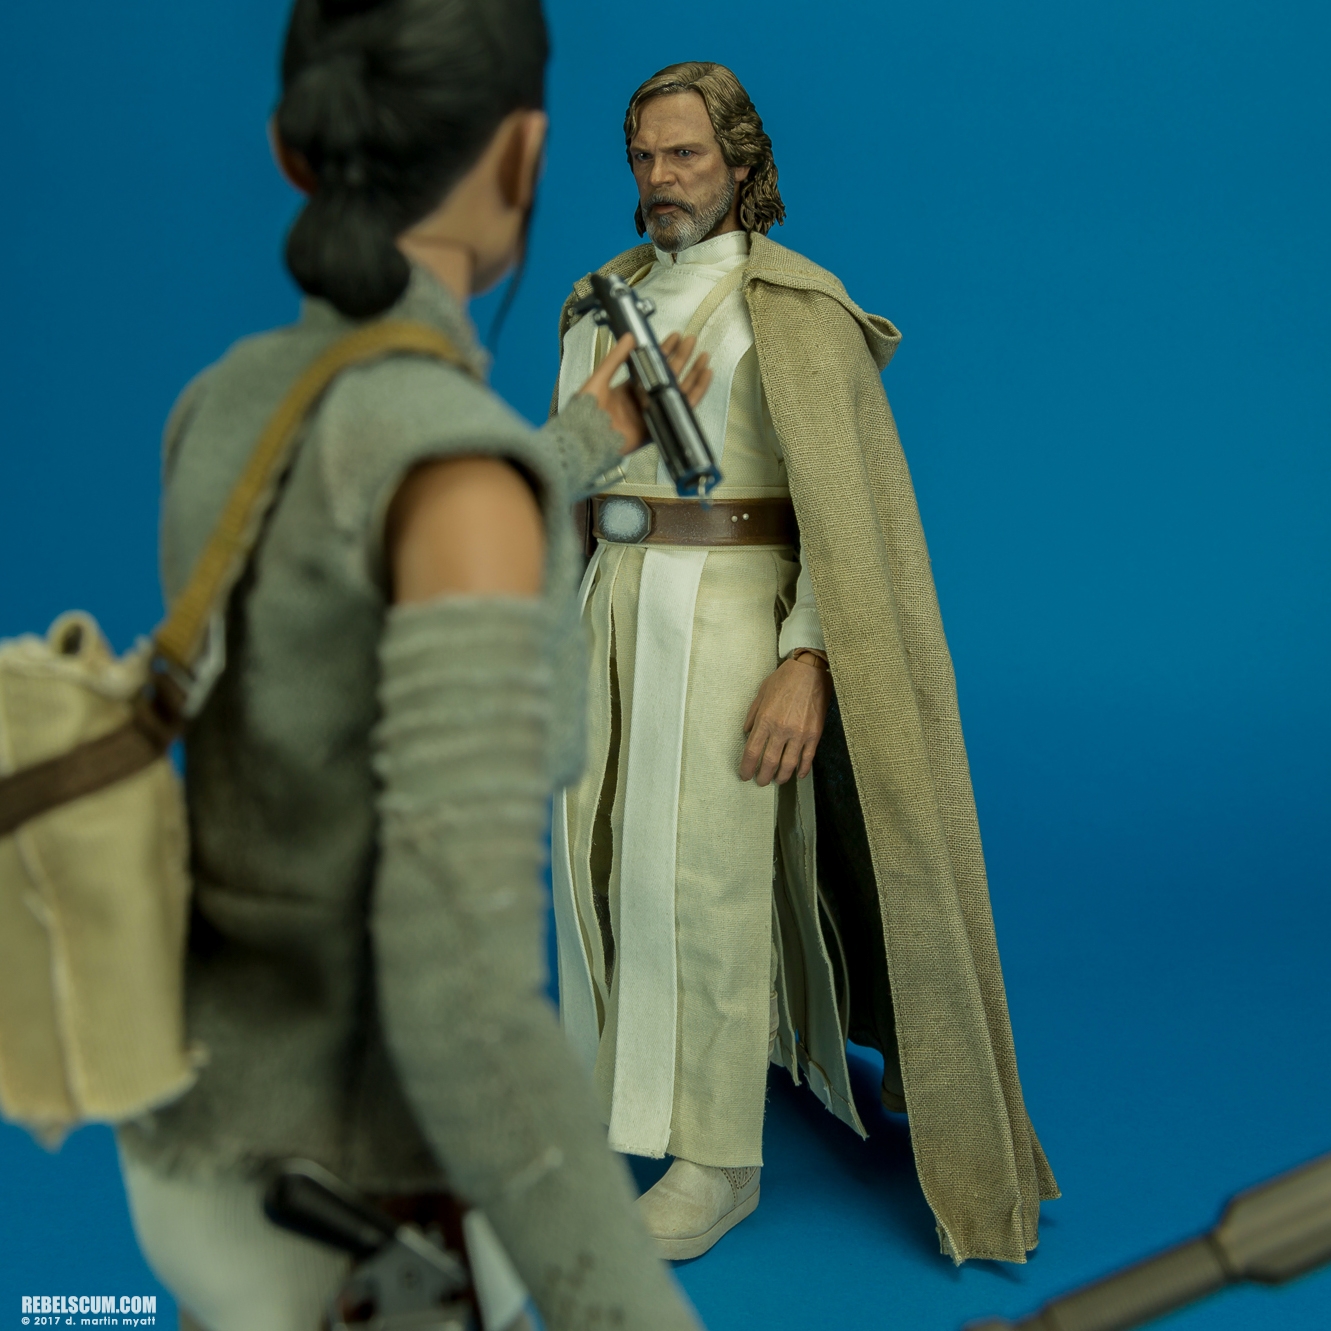 MMS390-Luke-Skywalker-The-Force-Awakens-Hot-Toys-021.jpg